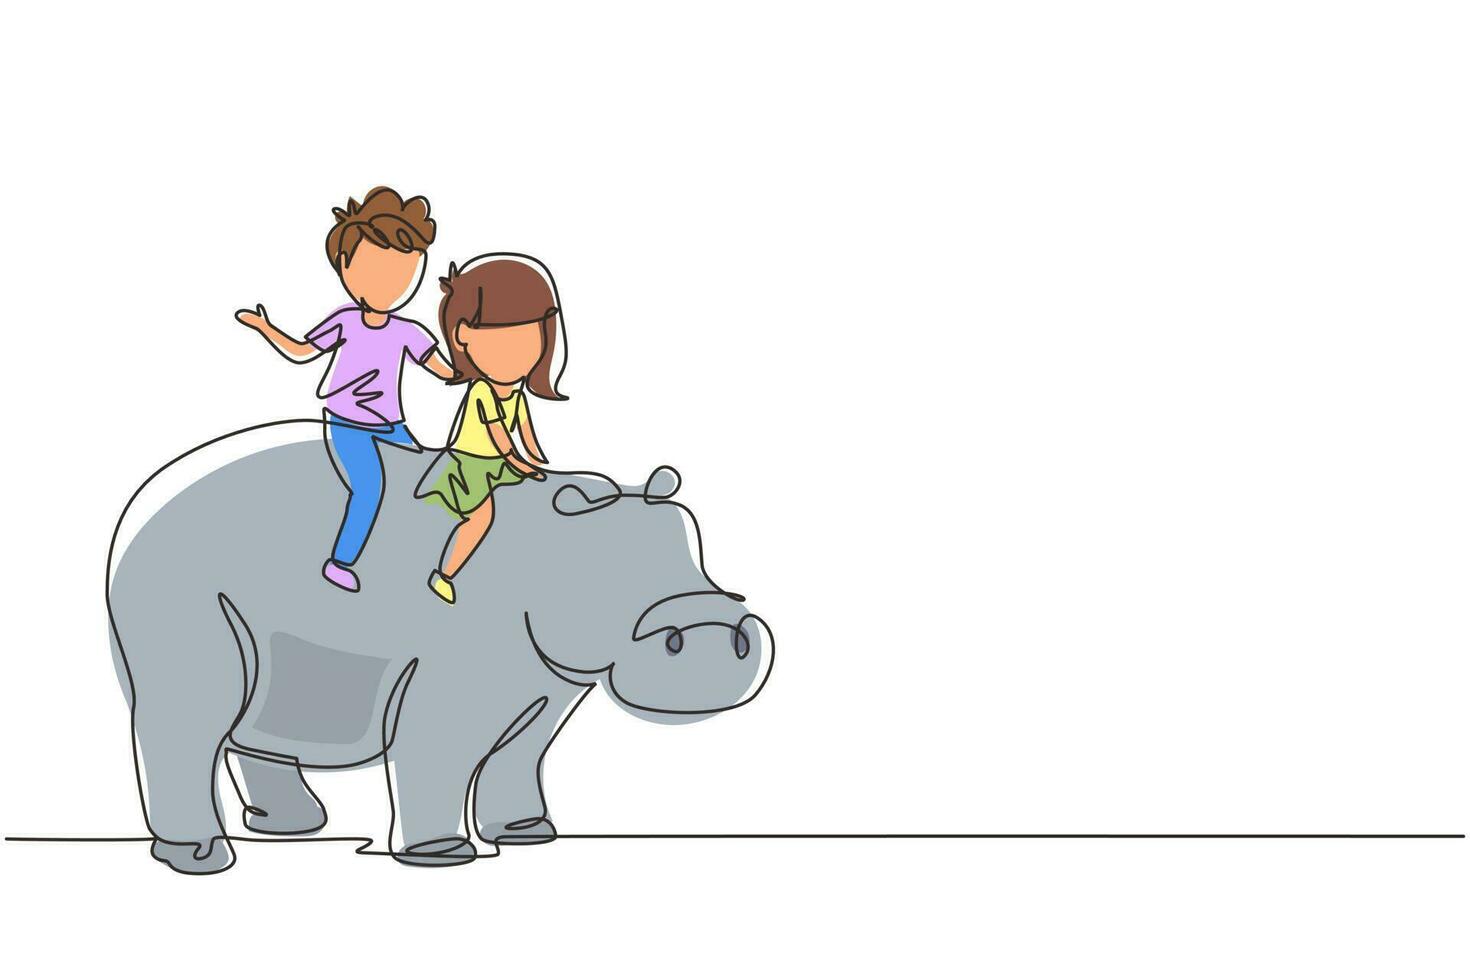 continu één lijntekening gelukkige kleine jongen en meisje die nijlpaard samen rijden. kinderen zitten op de rug nijlpaard in dierentuin. kinderen leren nijlpaard rijden. enkele lijn tekenen ontwerp vectorafbeelding vector